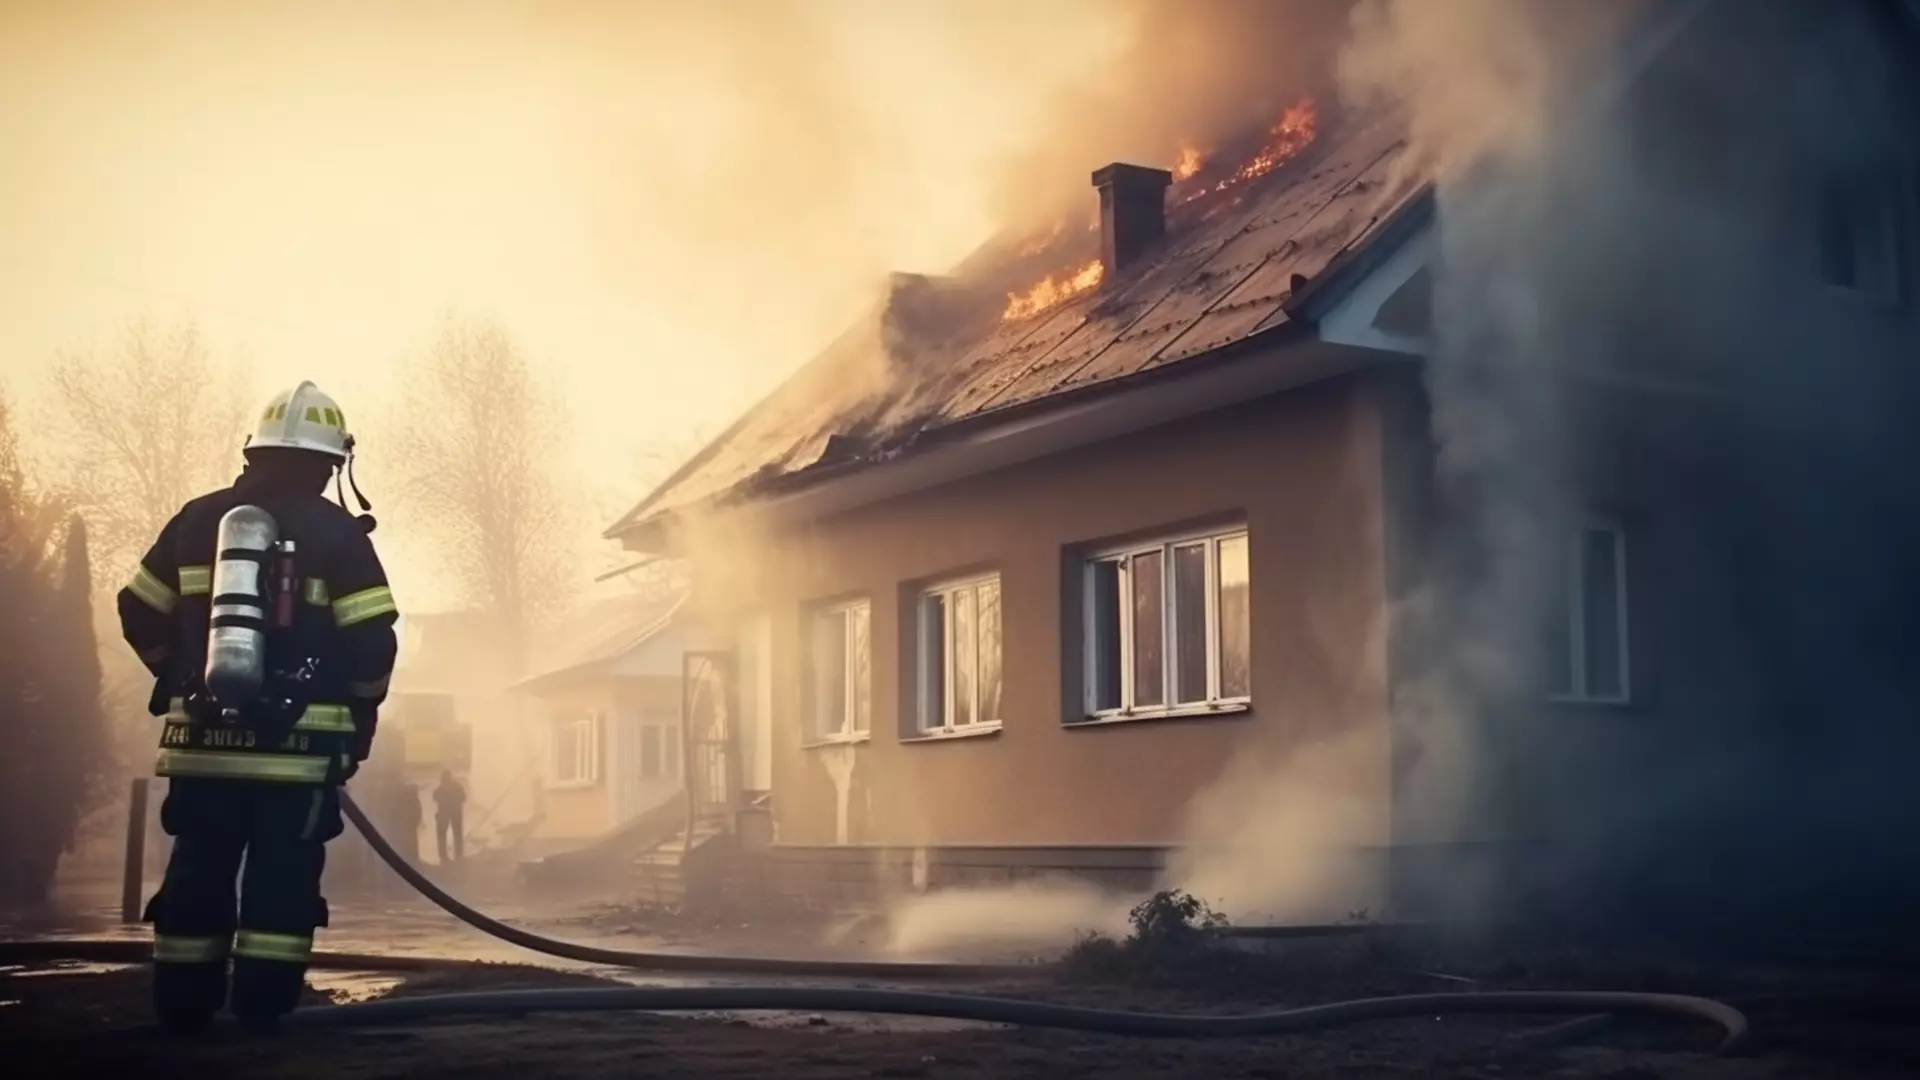 В Татарстане пенсионеры спаслись из горящего дома благодаря извещателю